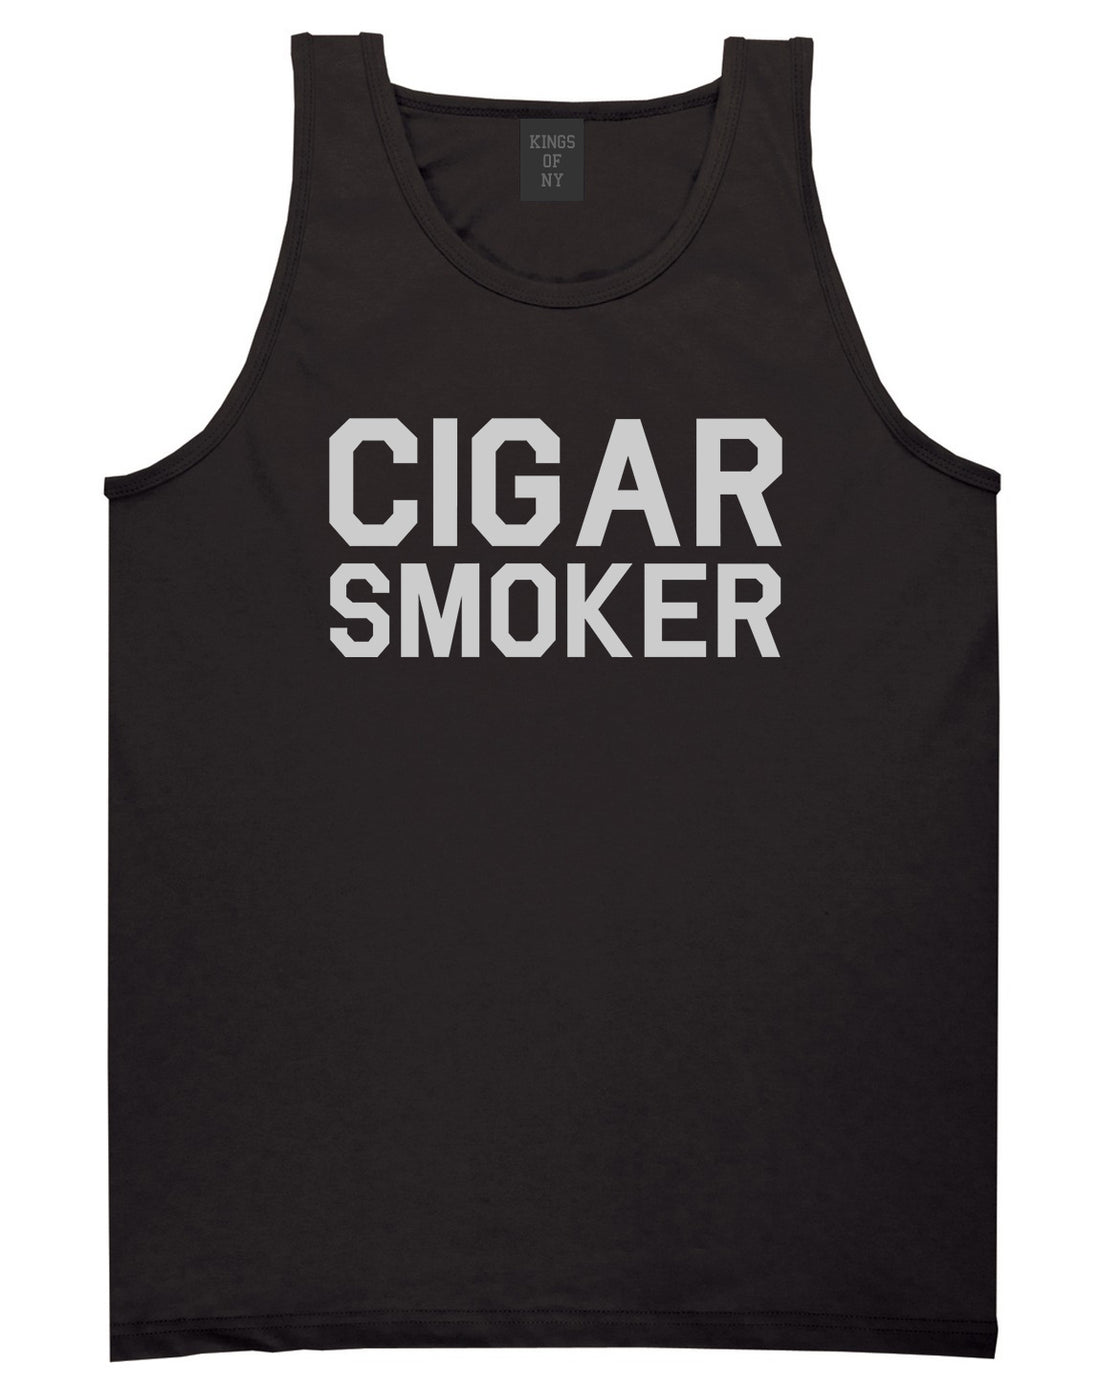 Cigar Smoker Black Tank Top Shirt by Kings Of NY